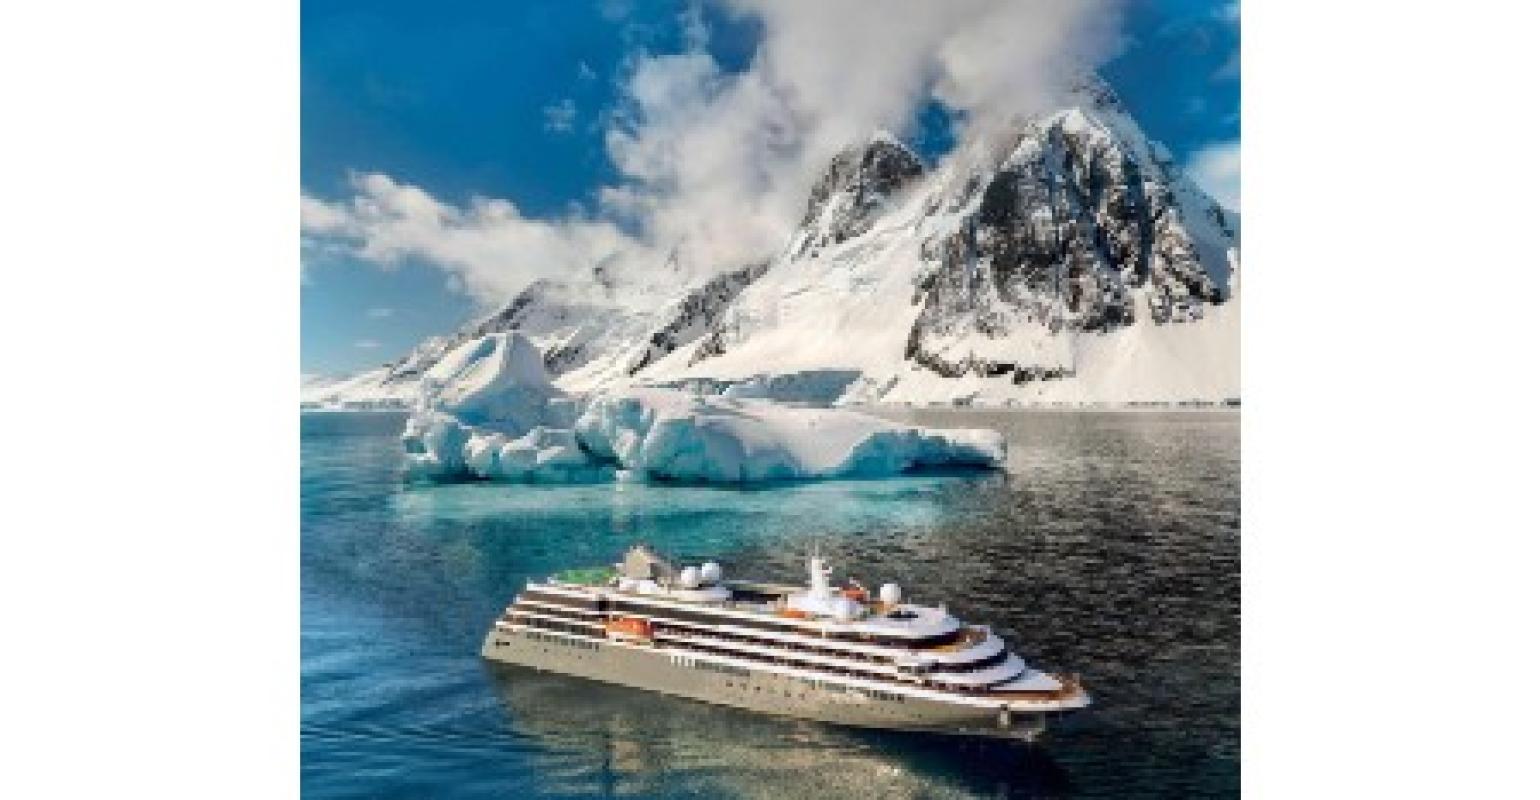 atlas antarctica cruise reviews